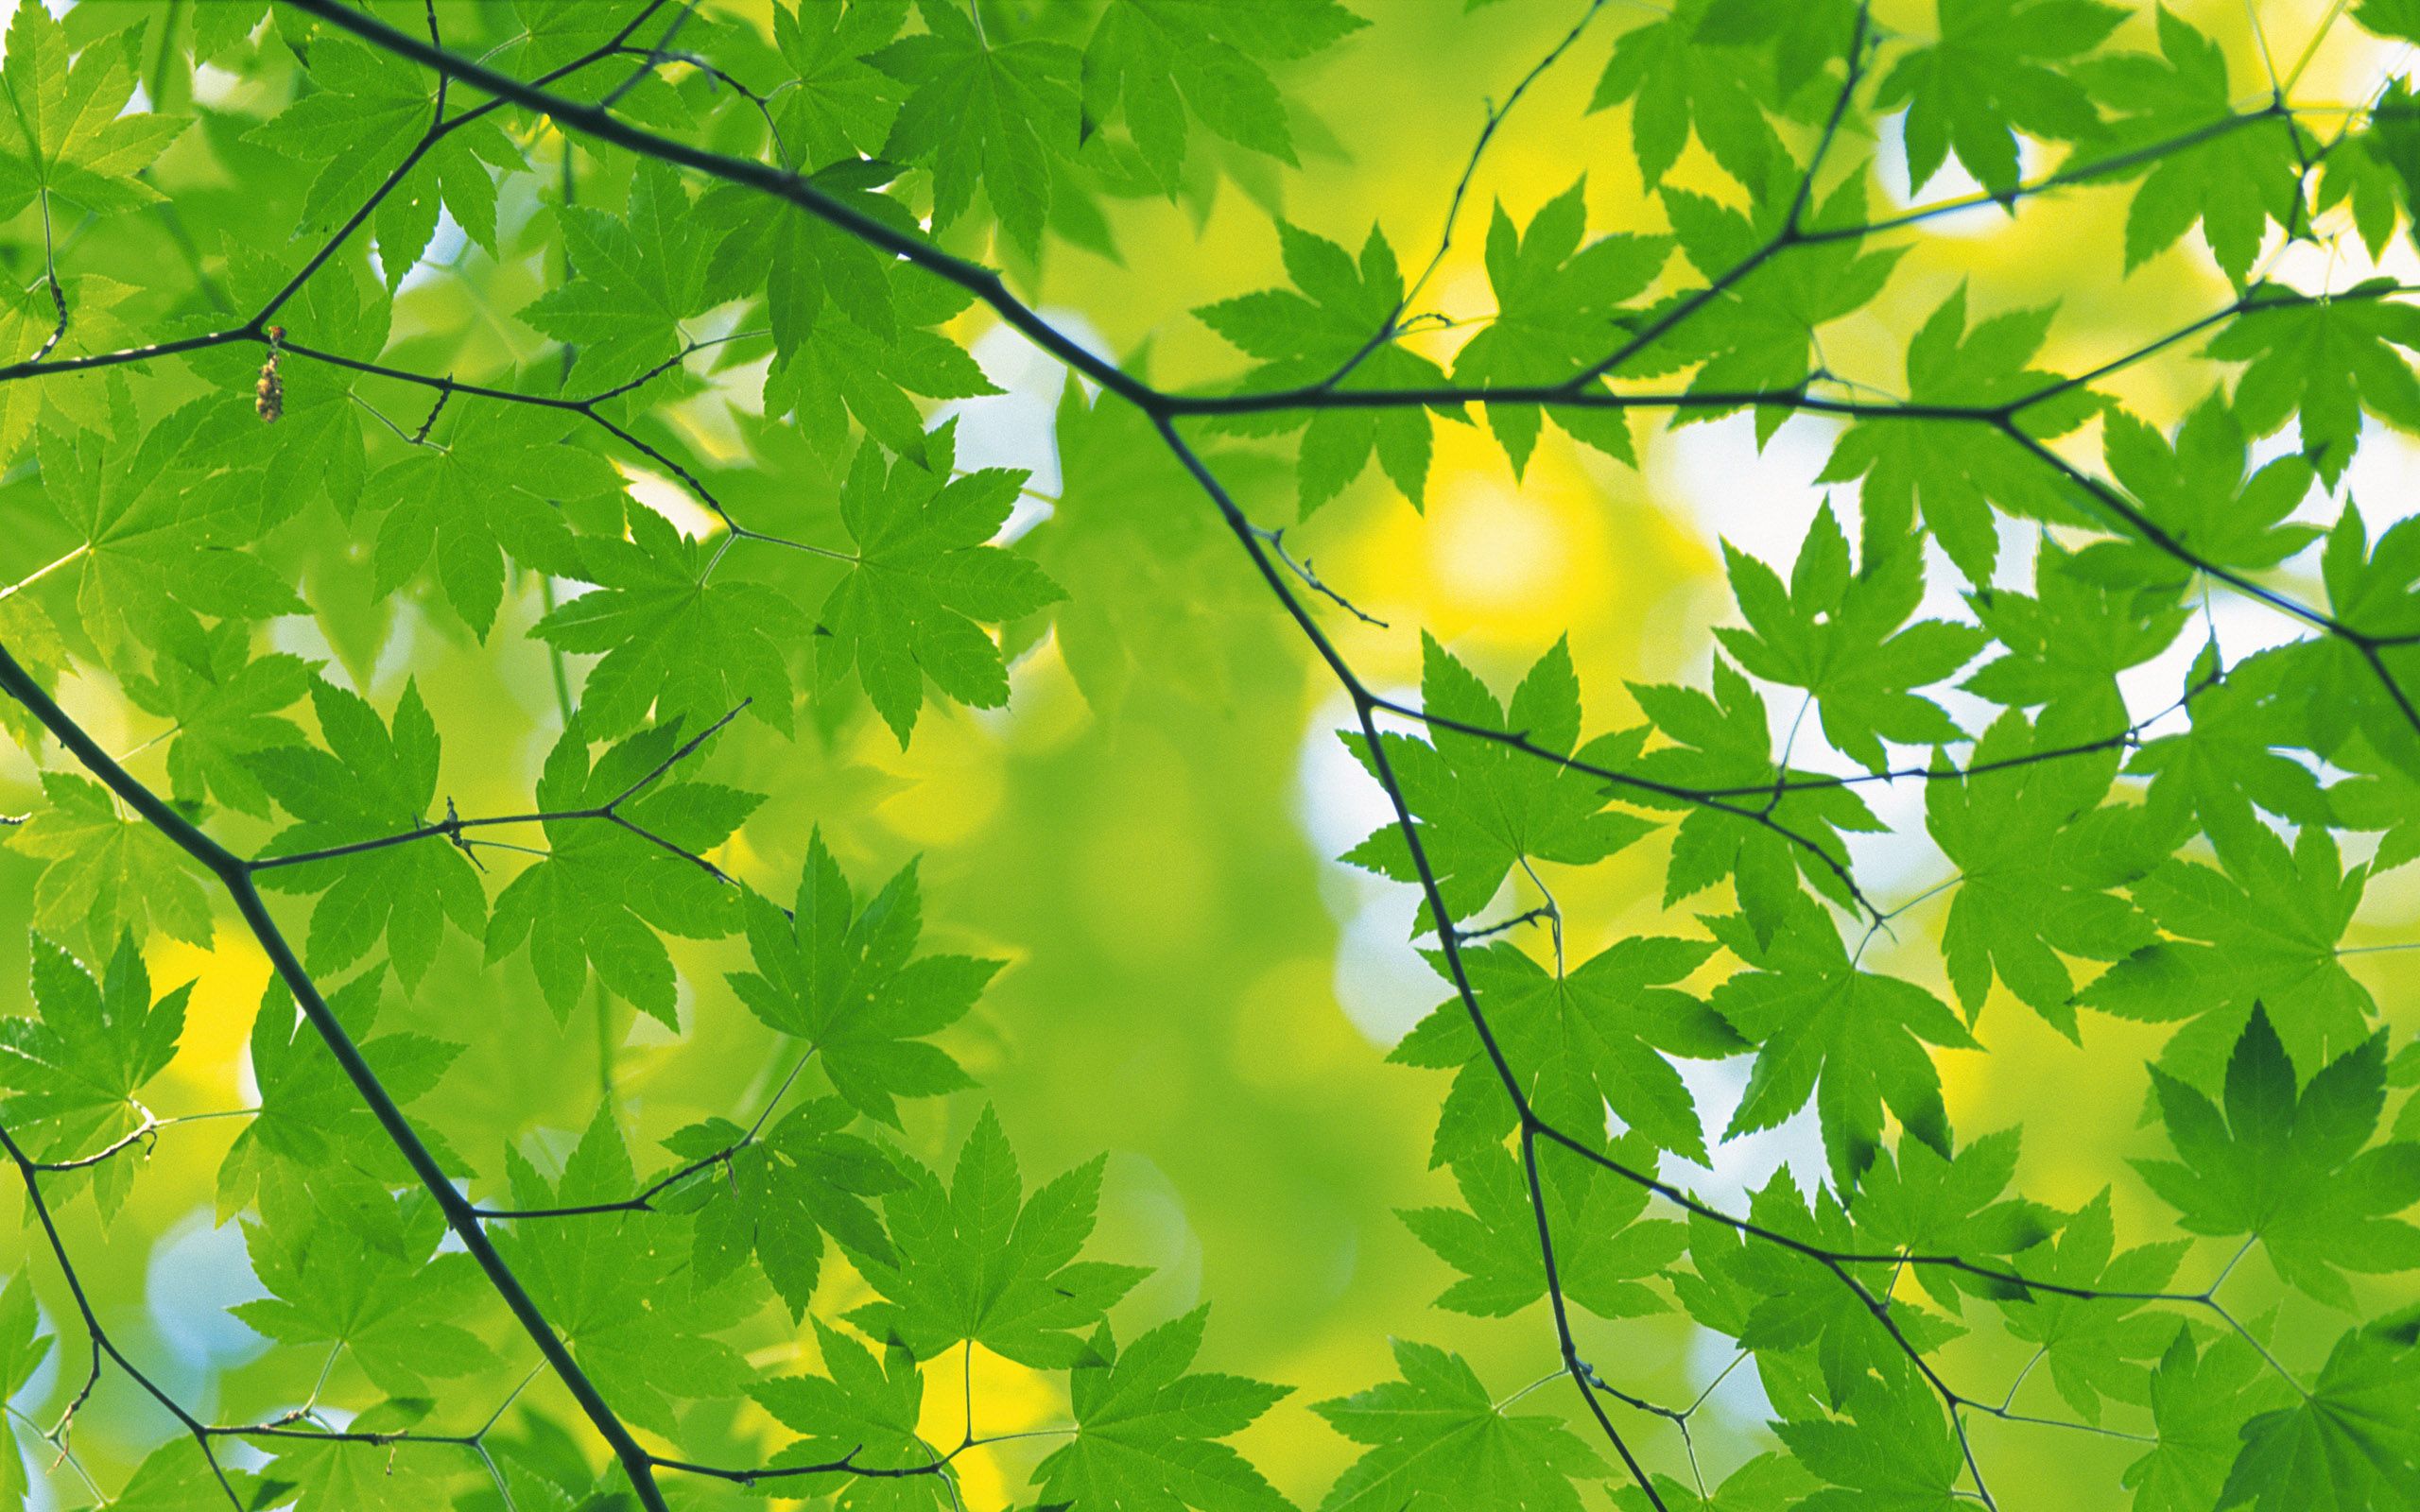 Cùng thưởng thức vẻ đẹp huyền ảo từ những chiếc lá vàng xanh phủ rộng nền hình với hình nền lá vàng xanh HD. Với màu sắc tươi sáng, độ phân giải cao và những đường nét sinh động, hình nền này chắc chắn sẽ mang đến cho bạn những trải nghiệm thú vị và bất ngờ!